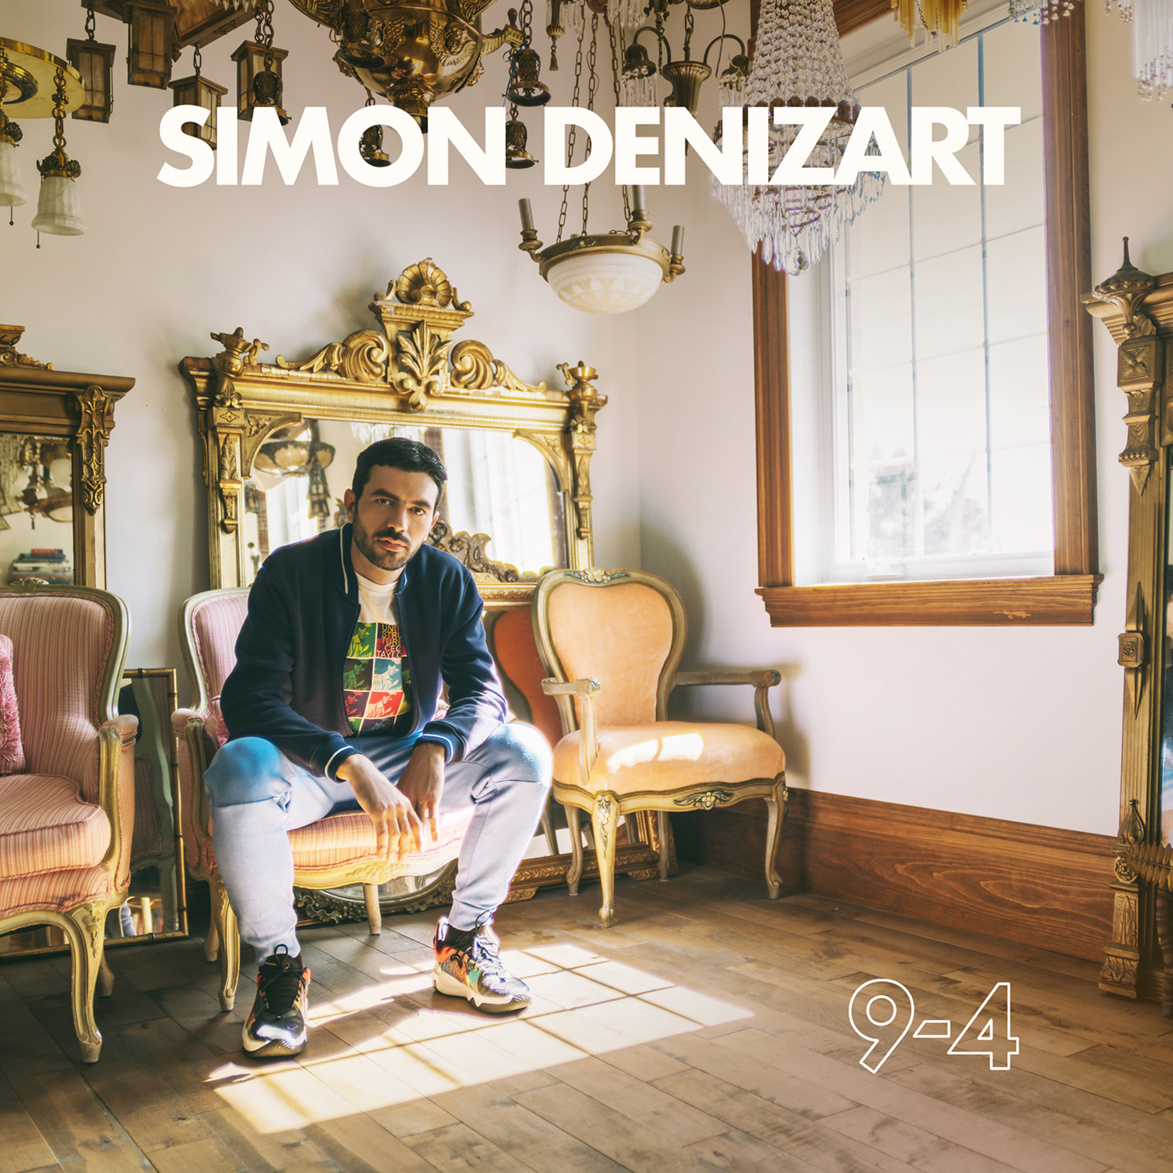 Simon Denizart célèbre Créteil et le 9-4 avec son nouveau clip